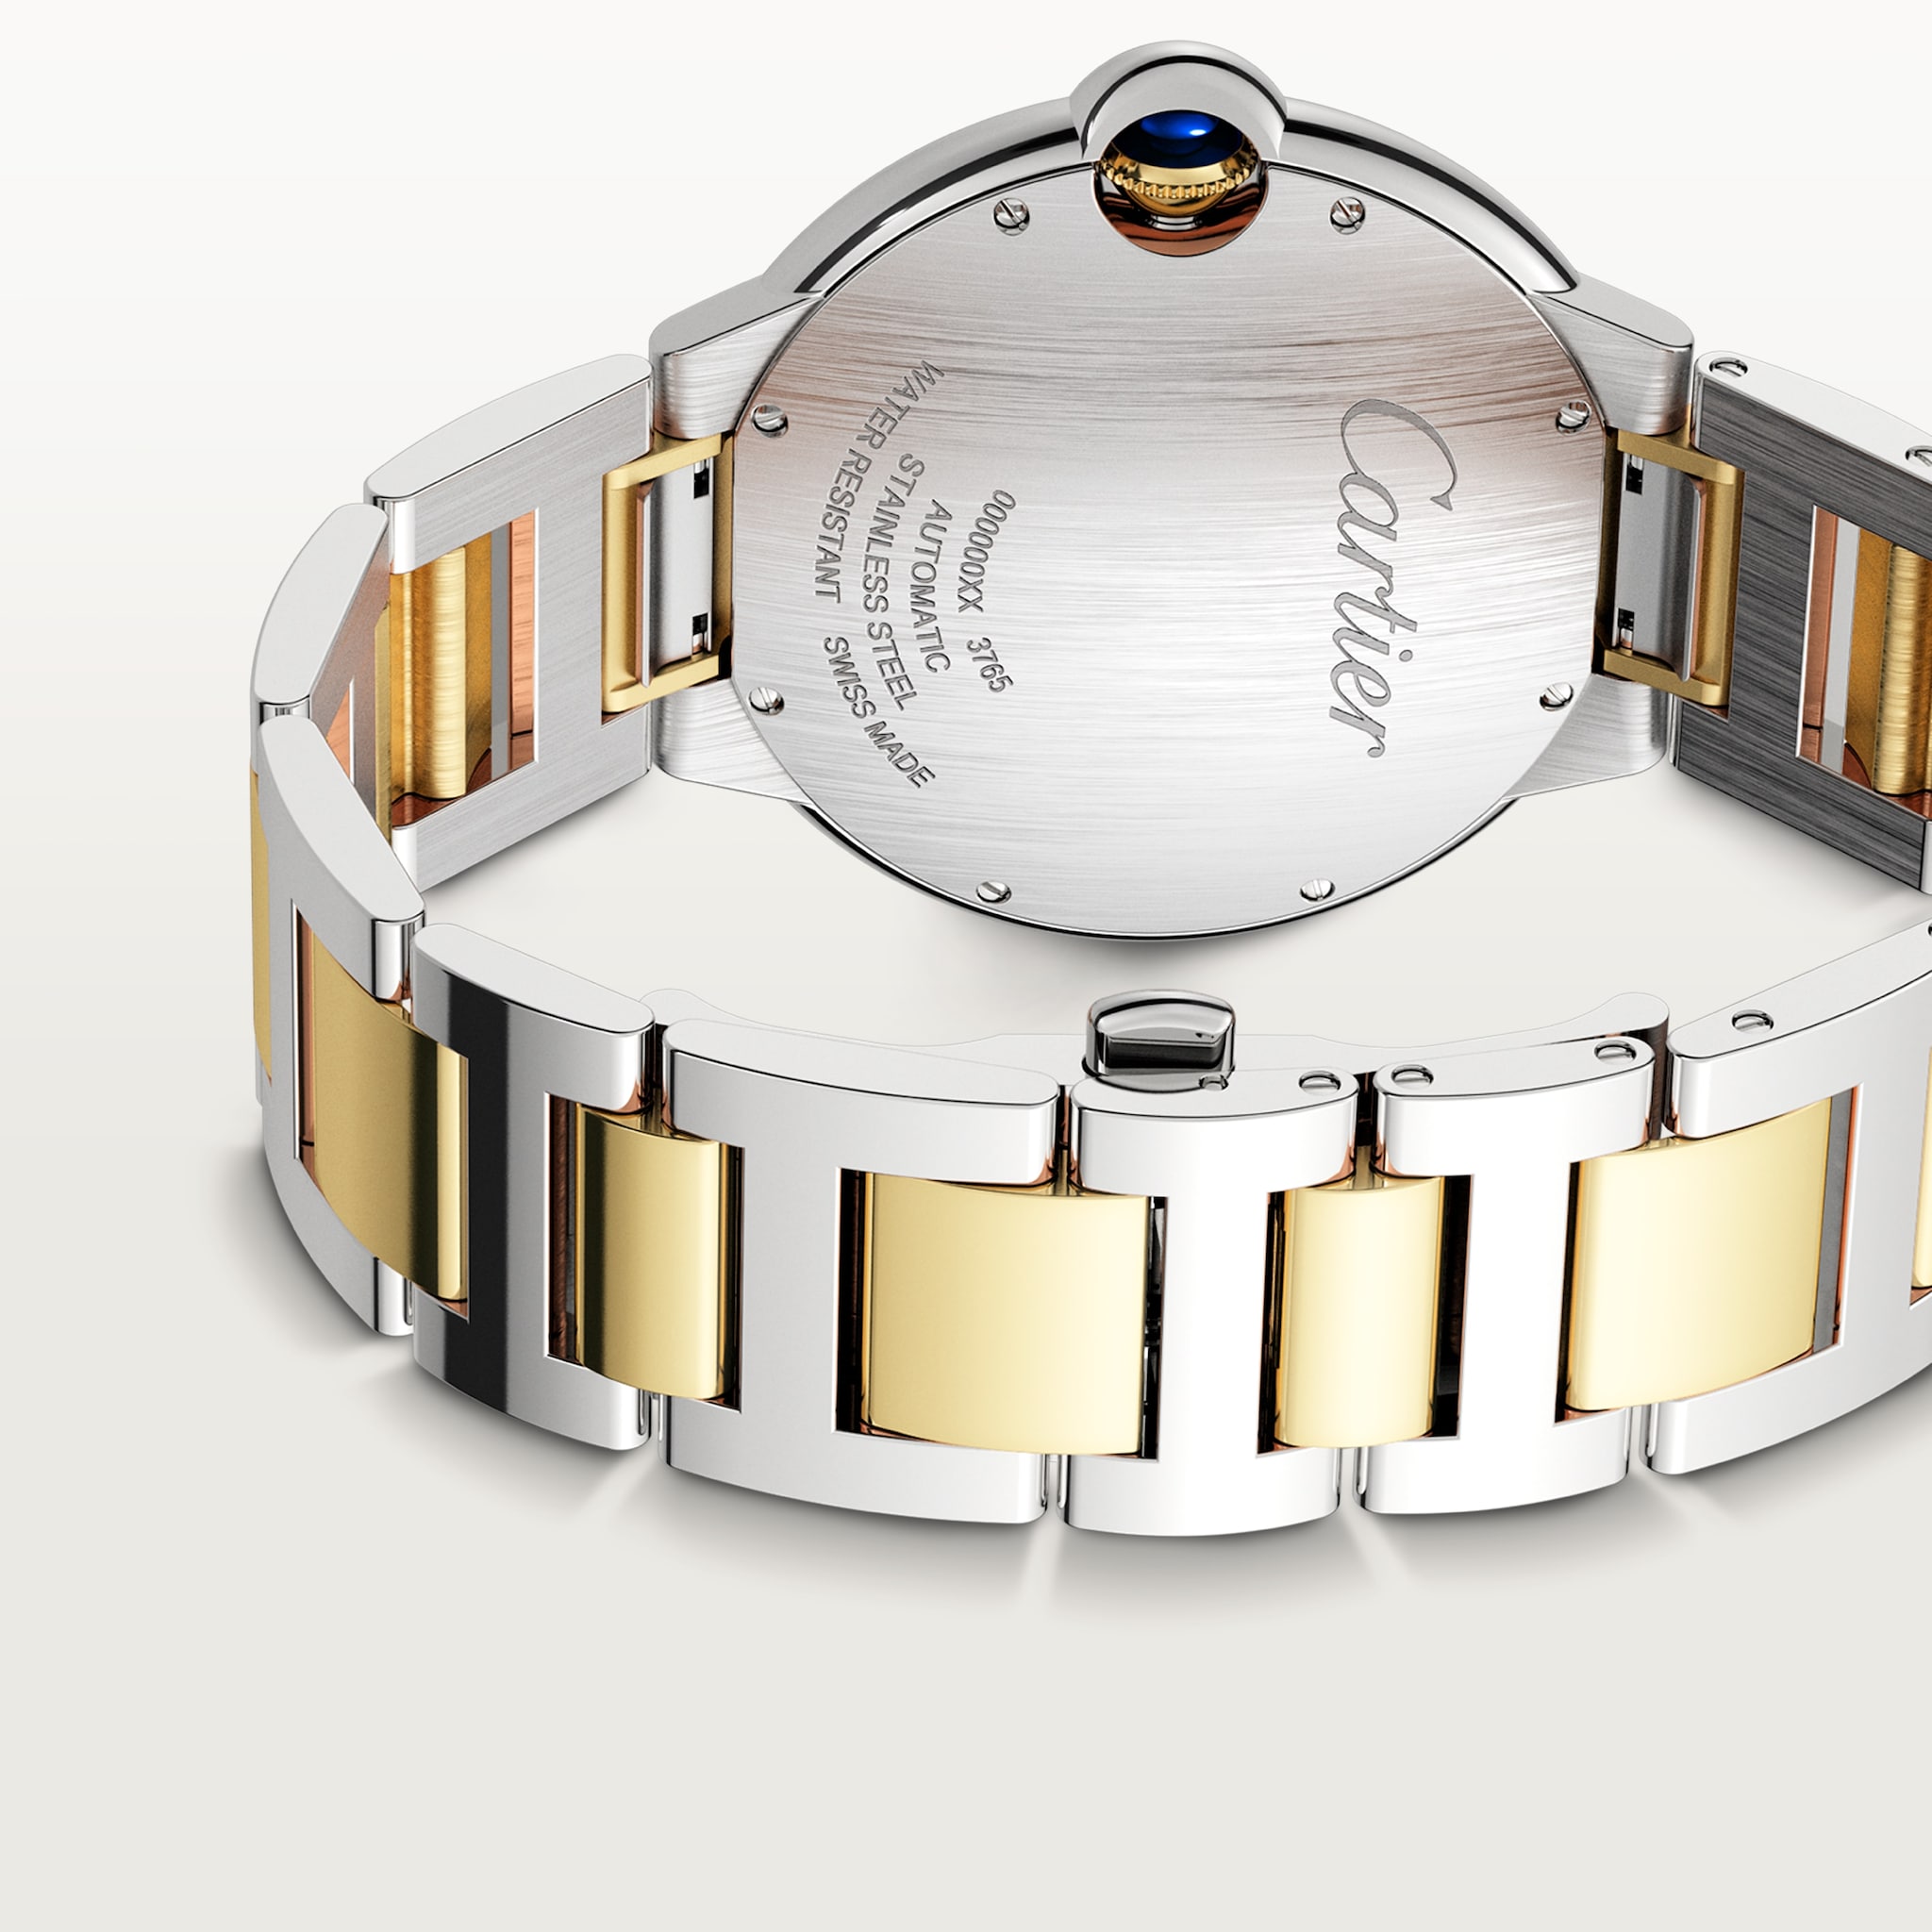 Reloj Ballon Bleu de Cartier42 mm, movimiento mecánico de carga automática, oro amarillo, acero